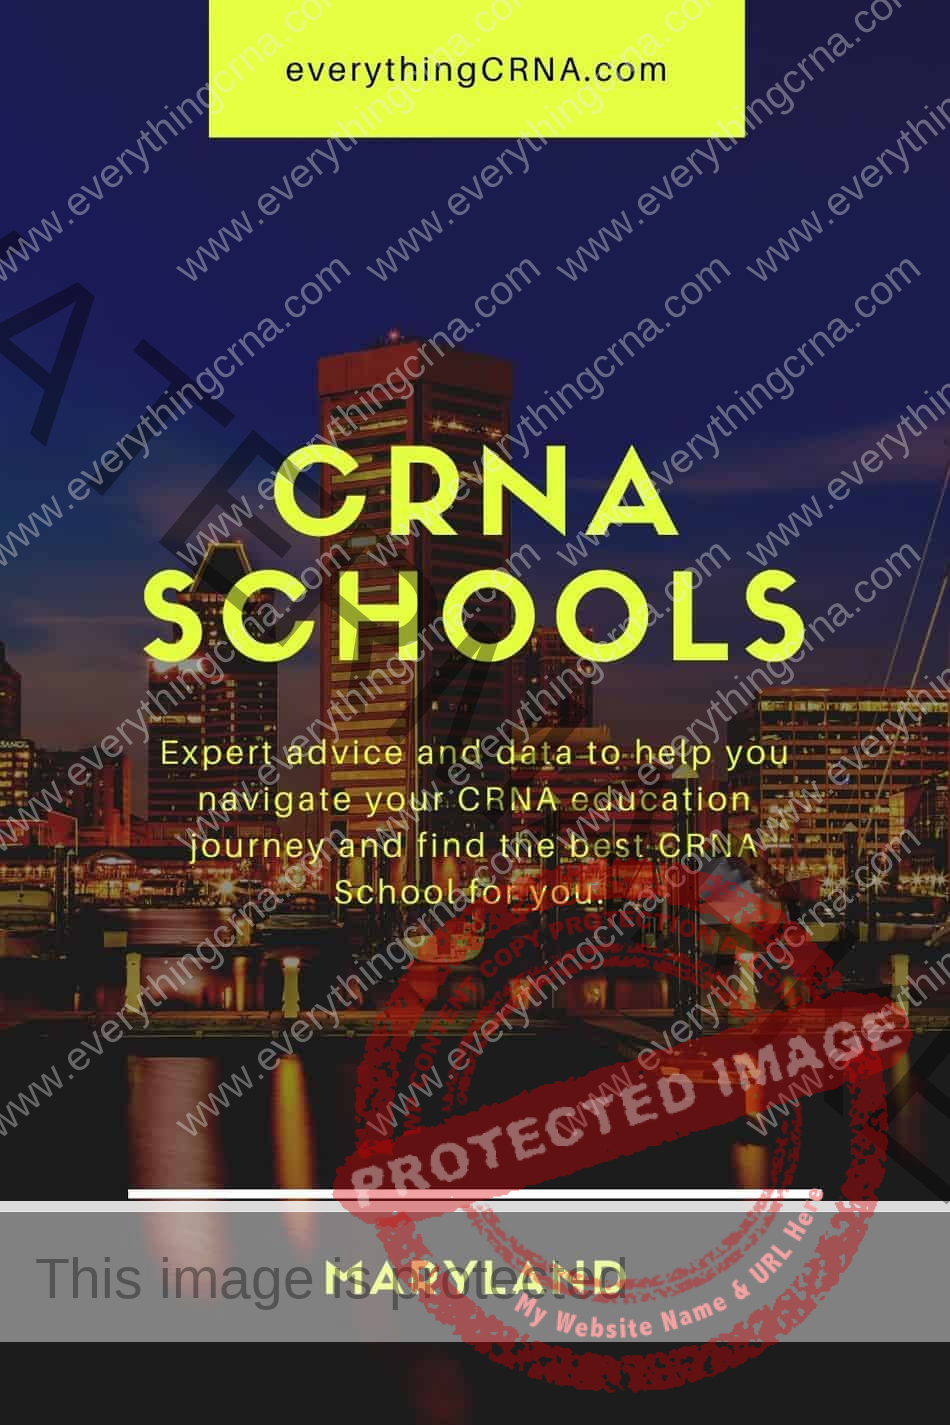 CRNA Schools in Maryland